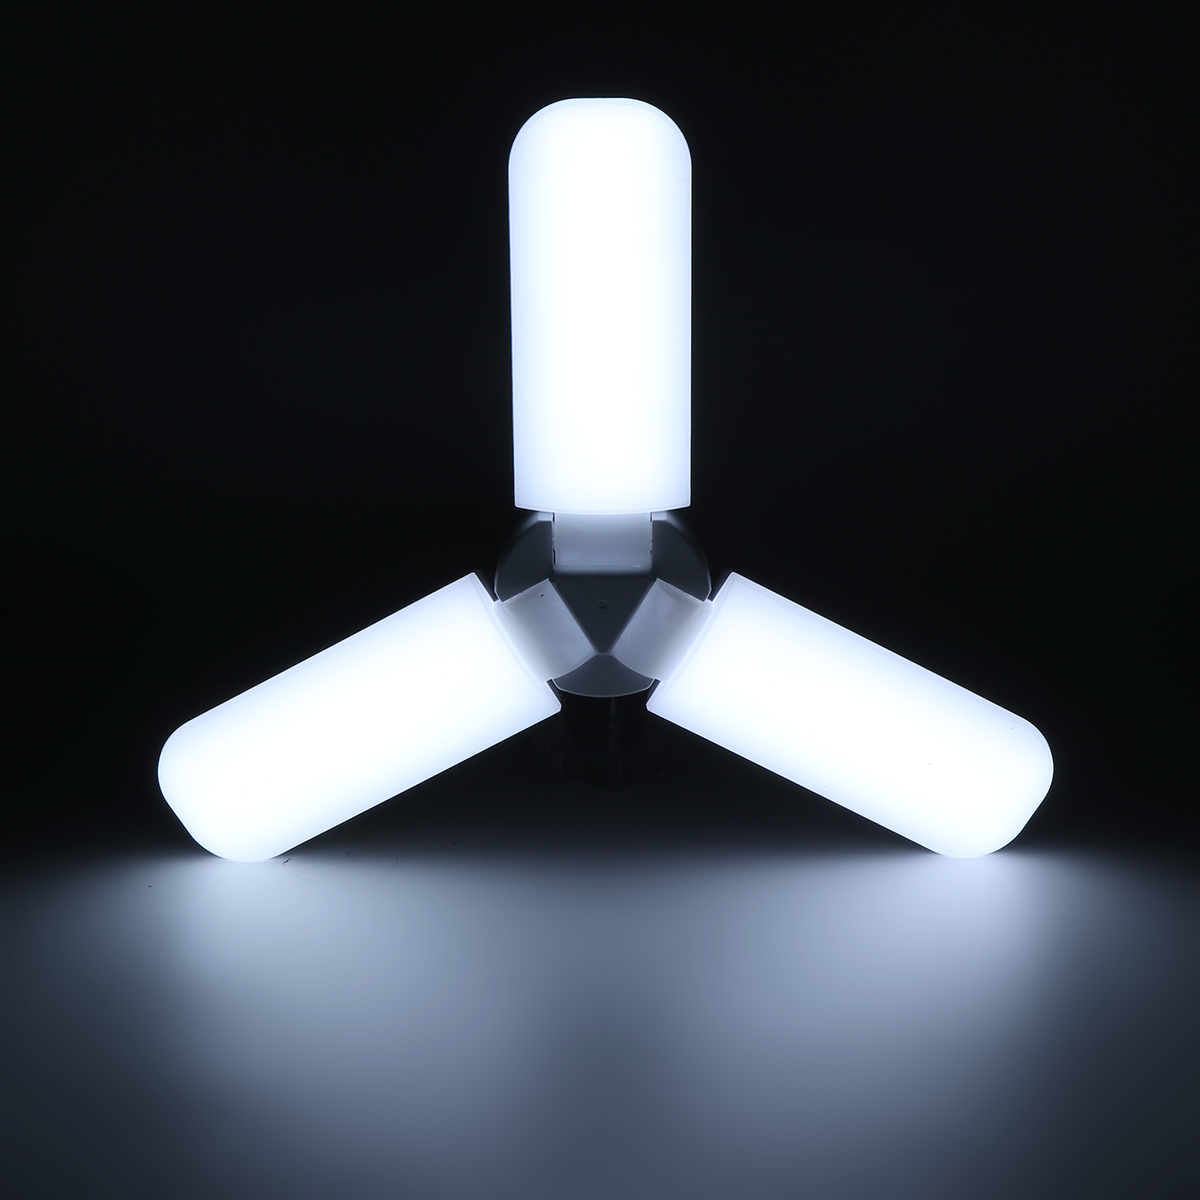 134-blade-E27-LED-Light-Bulb-Foldable-Fan-Blade-Light-Deformable-Ceiling-Lamp-Home-Living-Room-Inter-1861740-11